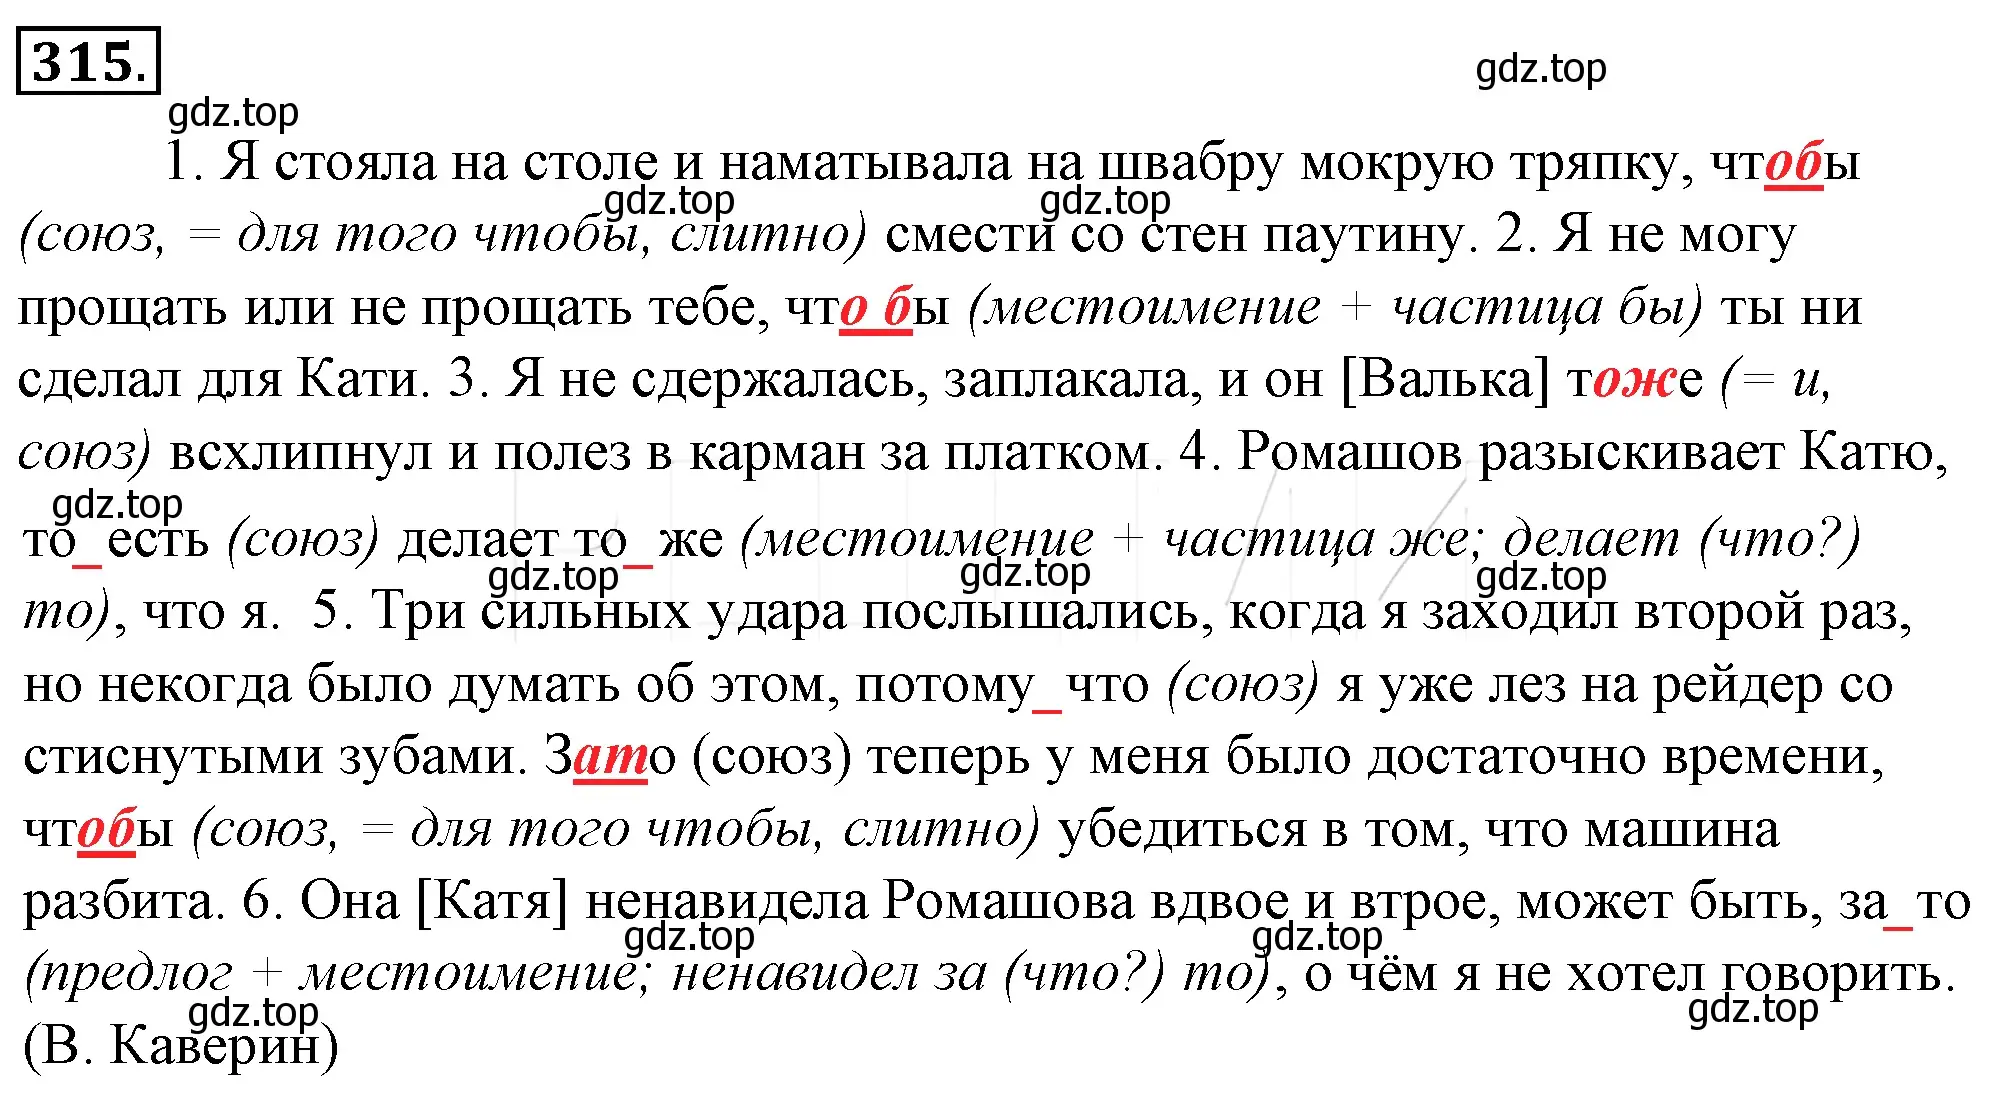 Решение 4. номер 339 (страница 316) гдз по русскому языку 10-11 класс Гольцова, Шамшин, учебник 1 часть